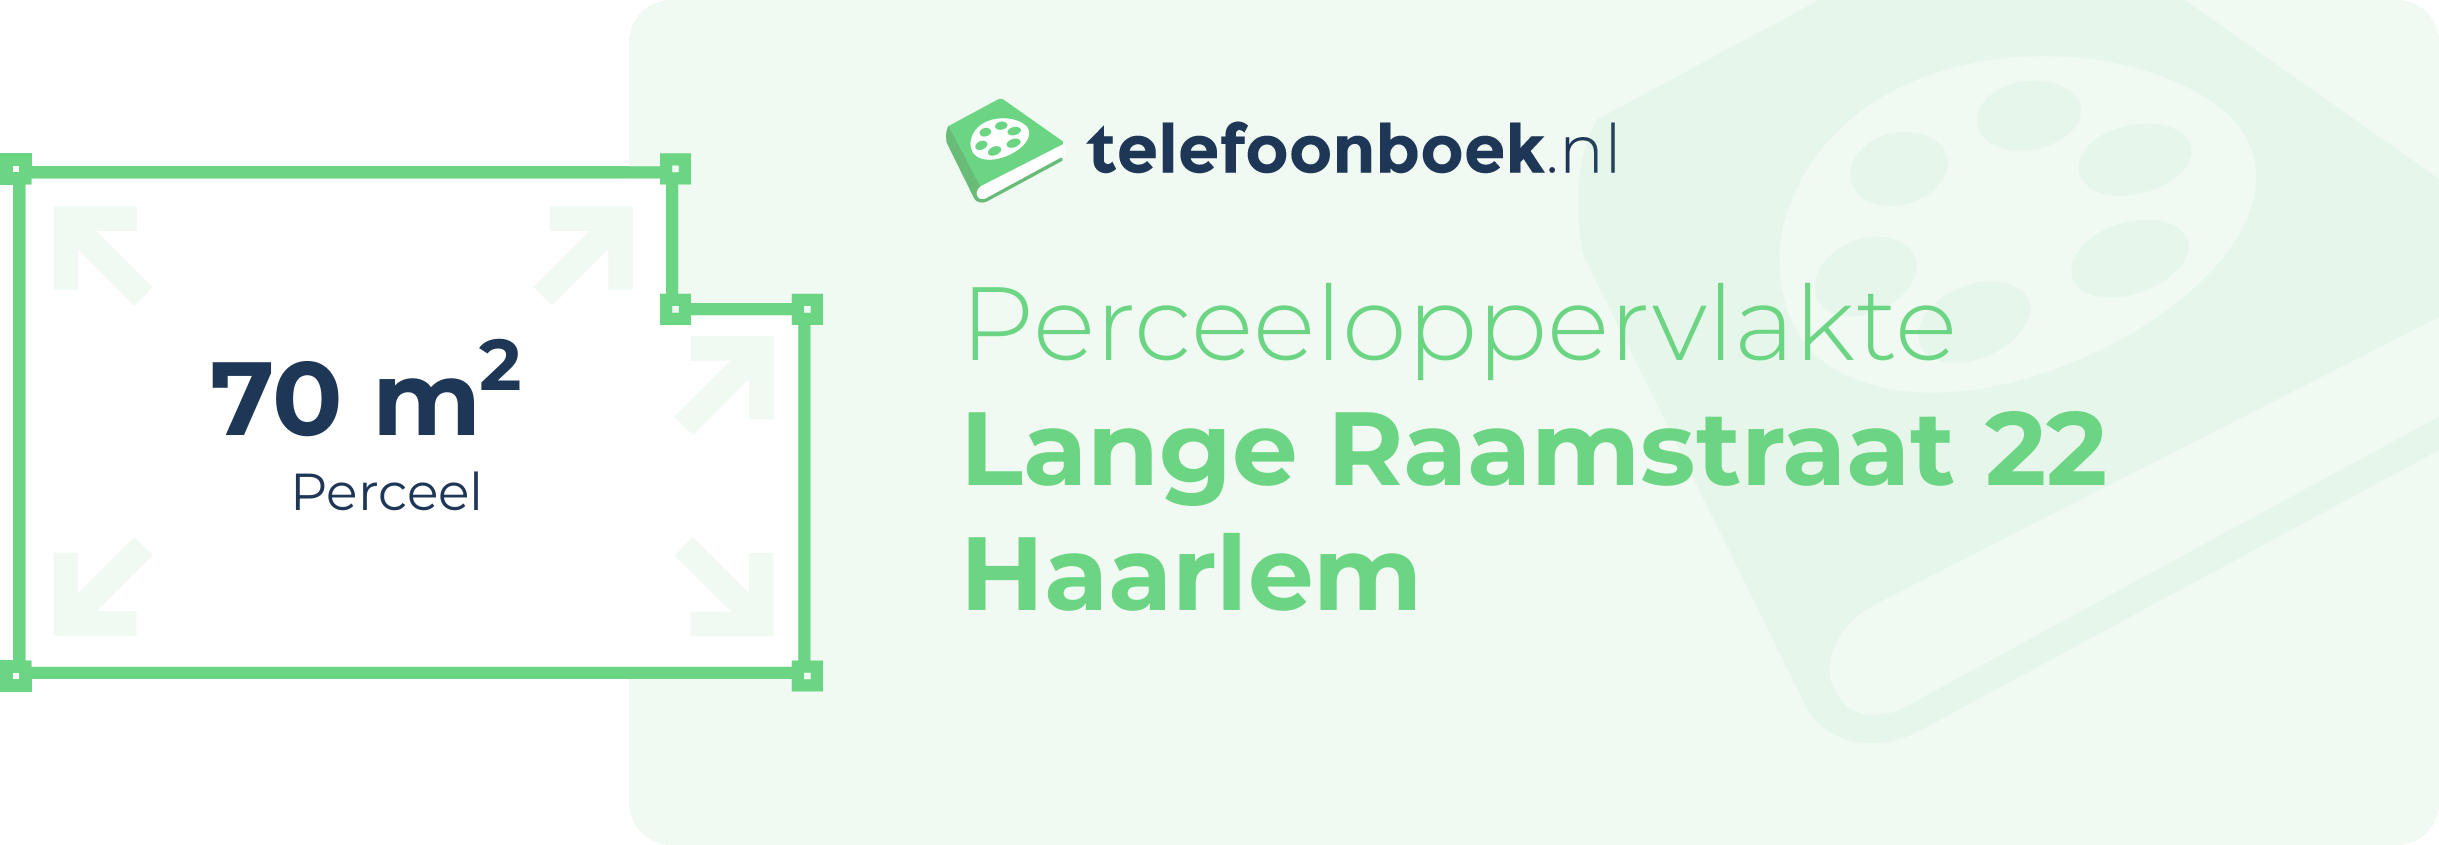 Perceeloppervlakte Lange Raamstraat 22 Haarlem